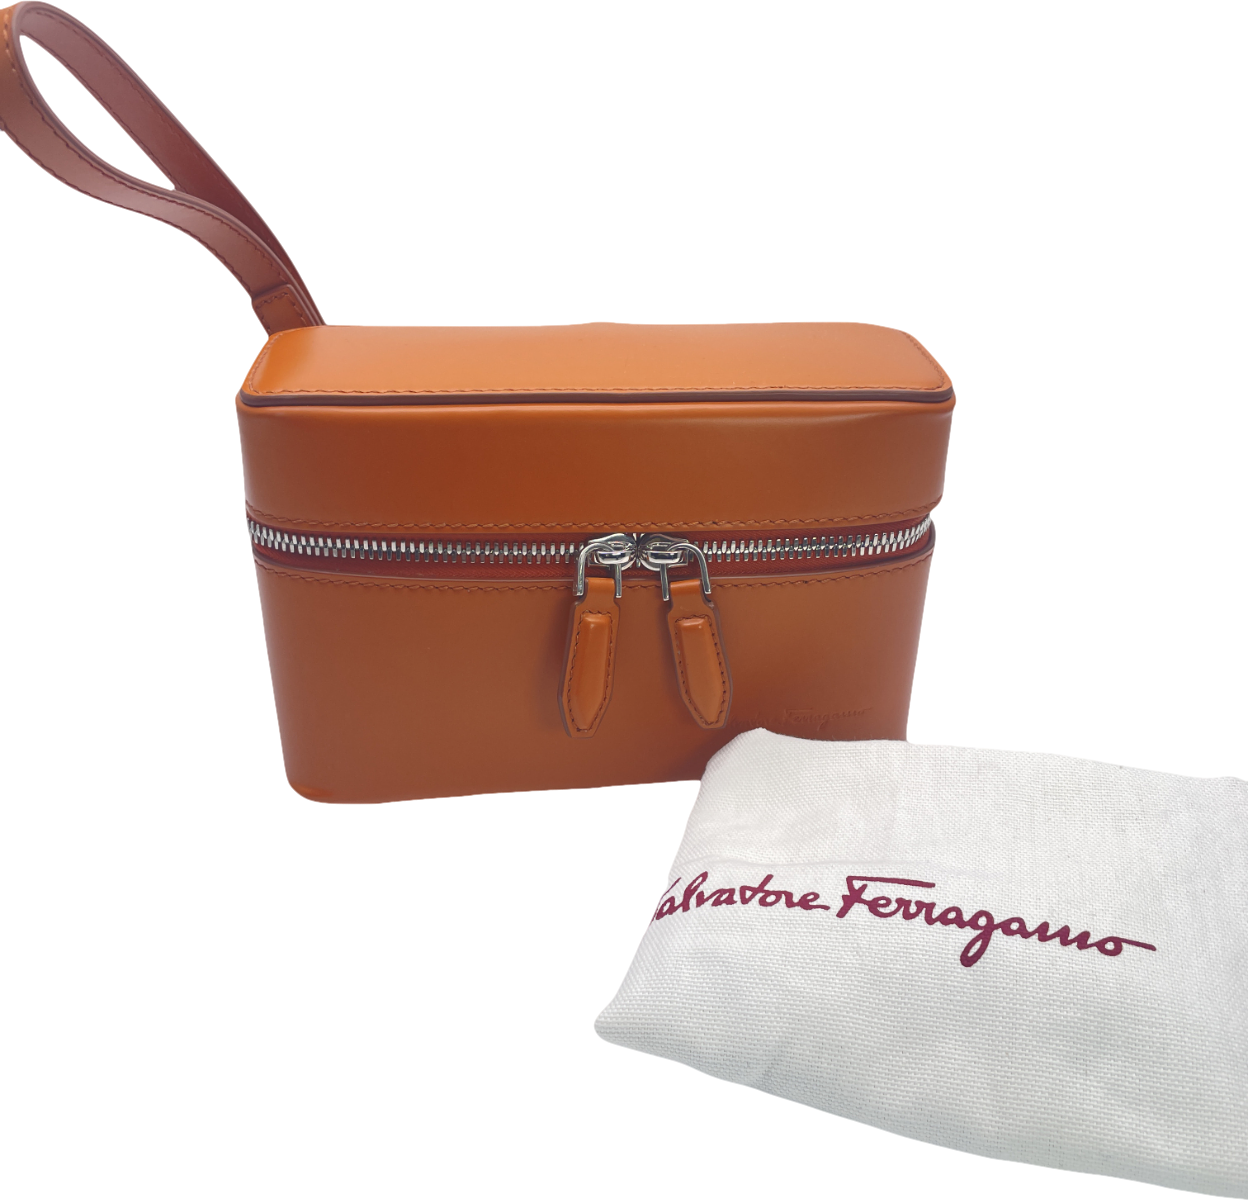 salvatore ferragamo Brown Tan Leather Box Bag With Wrist Strap